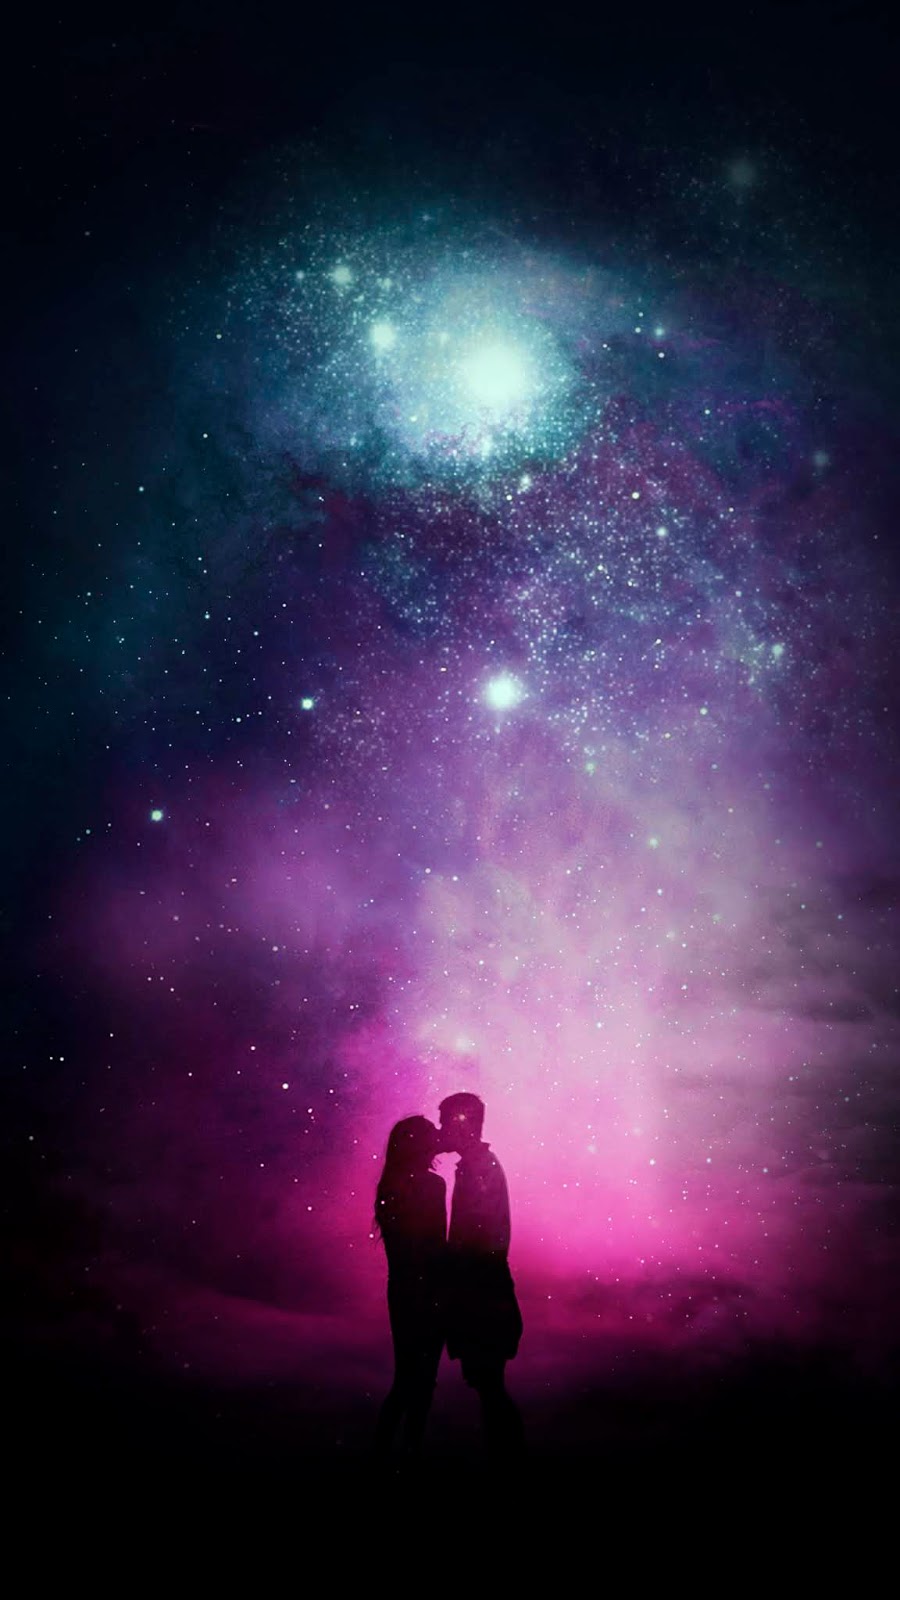 A universe kiss